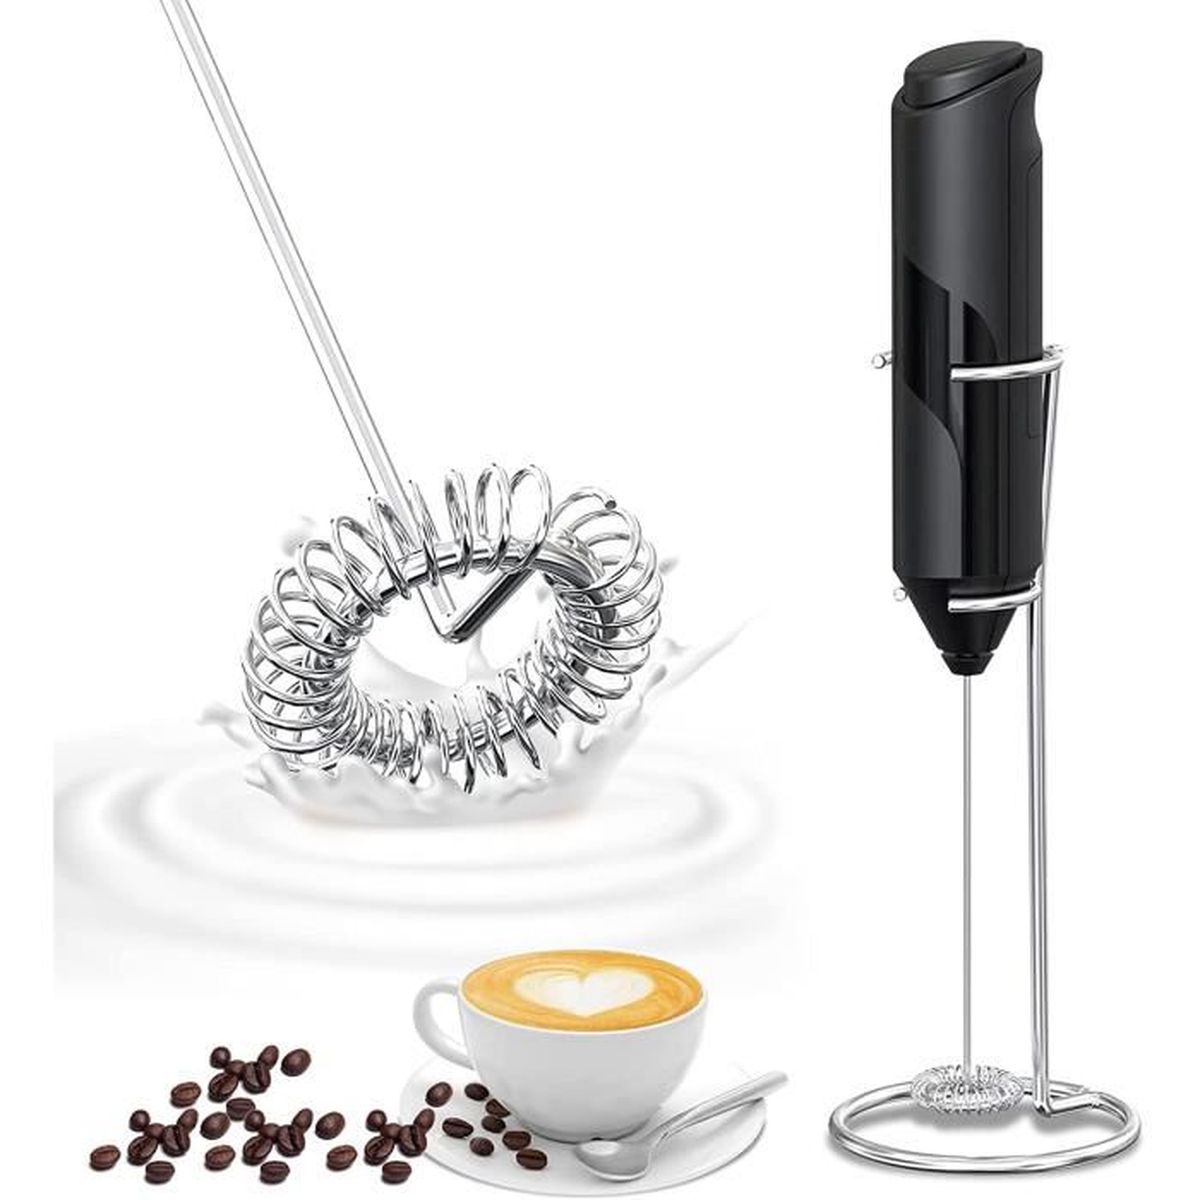 Design pratique et durable. Fouet Pour cappuccino latte N-K Mousseur à lait électrique 